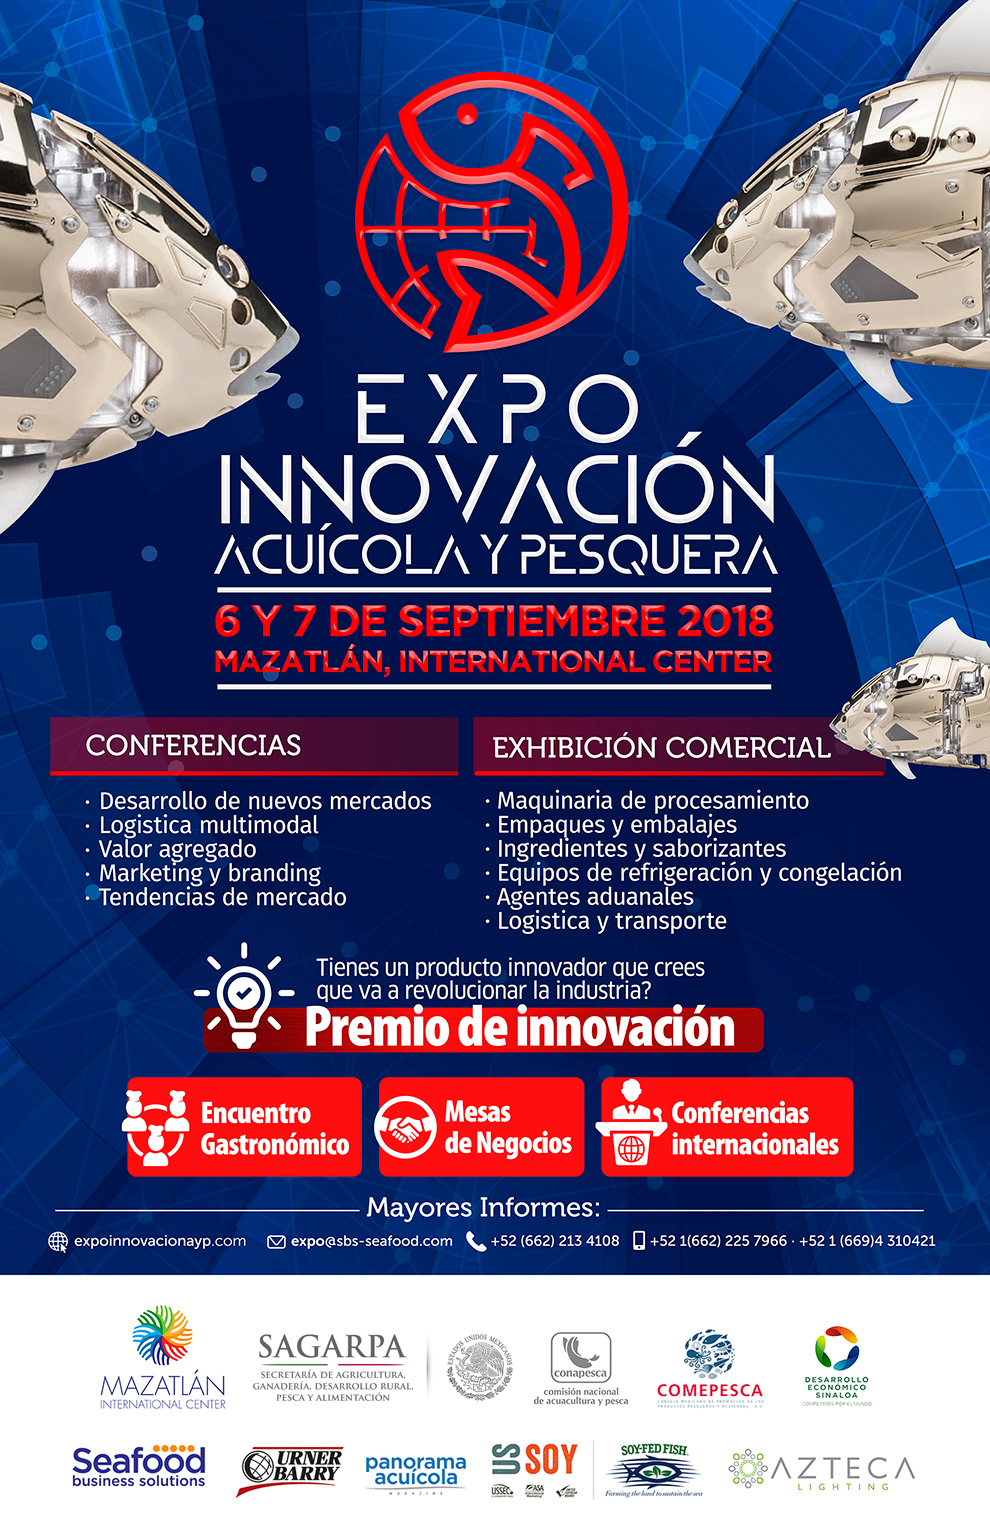 EXPO Innovacion Acuícola y Pesquera 2018